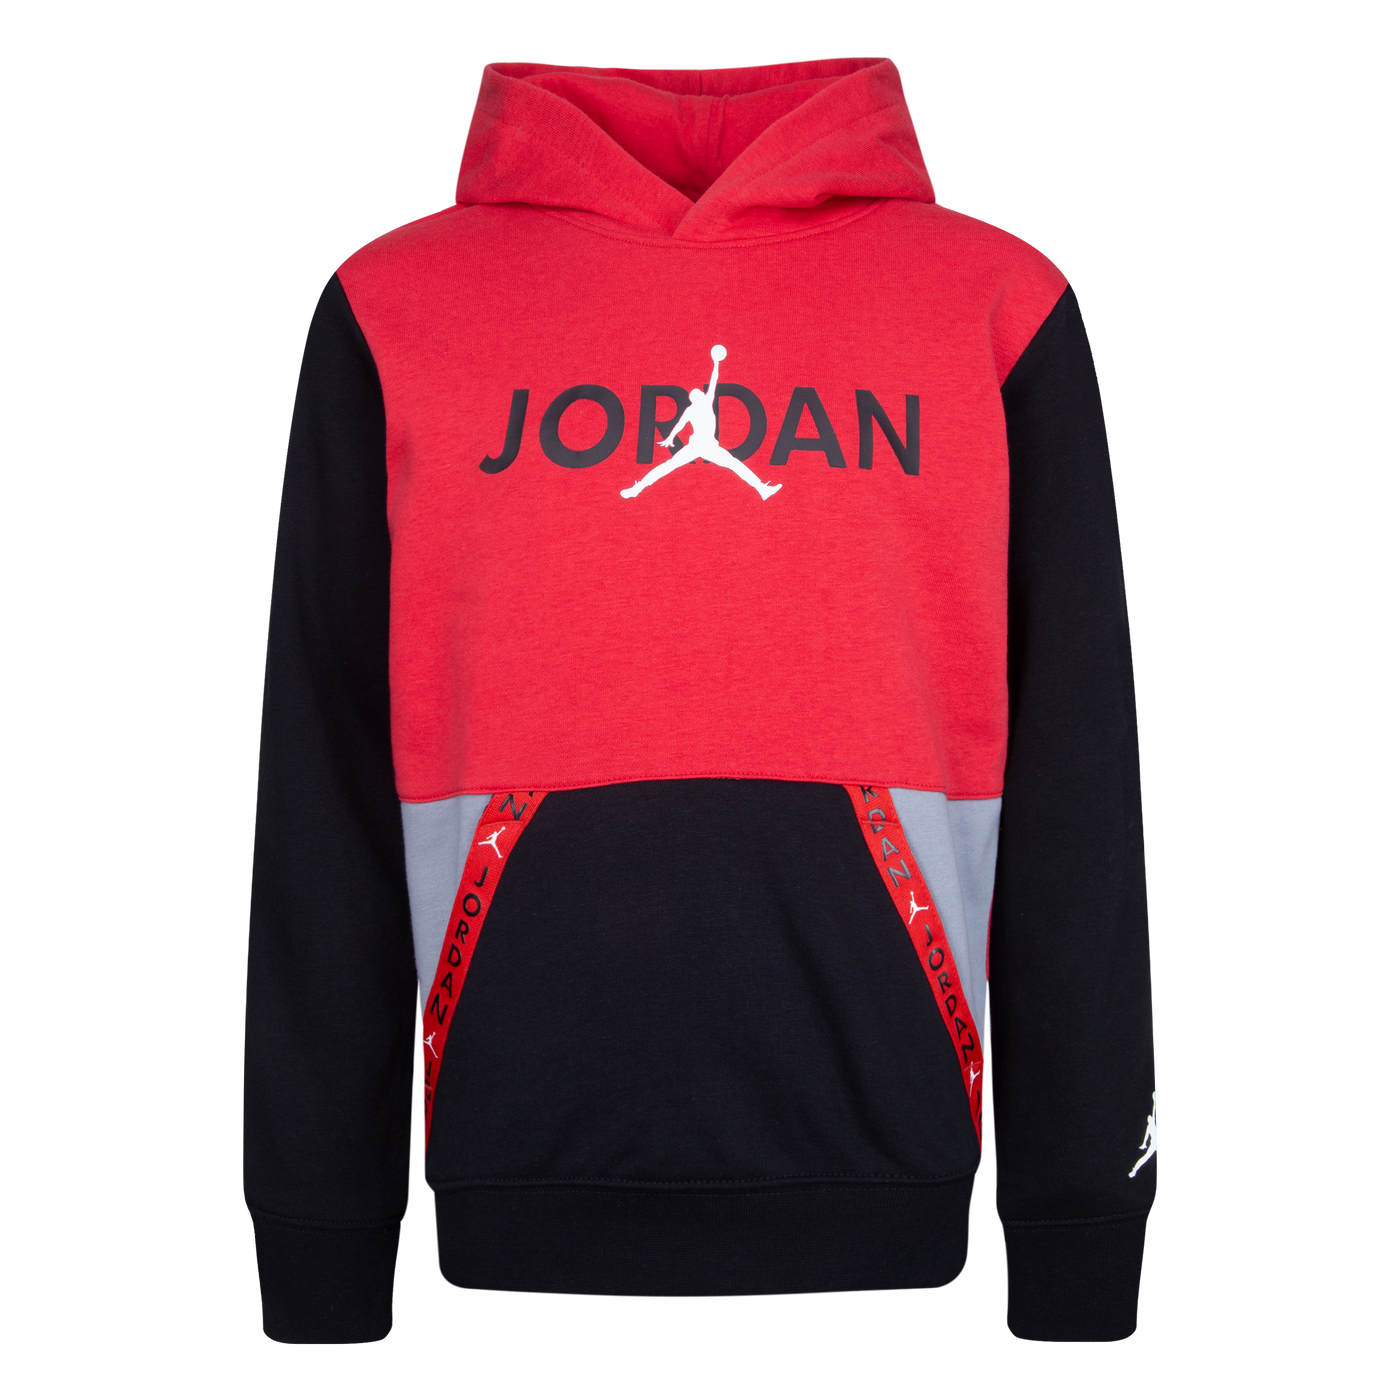 Jordan Vert Tape French Terry Pullover Hoodie Sweatshirt Jordan   